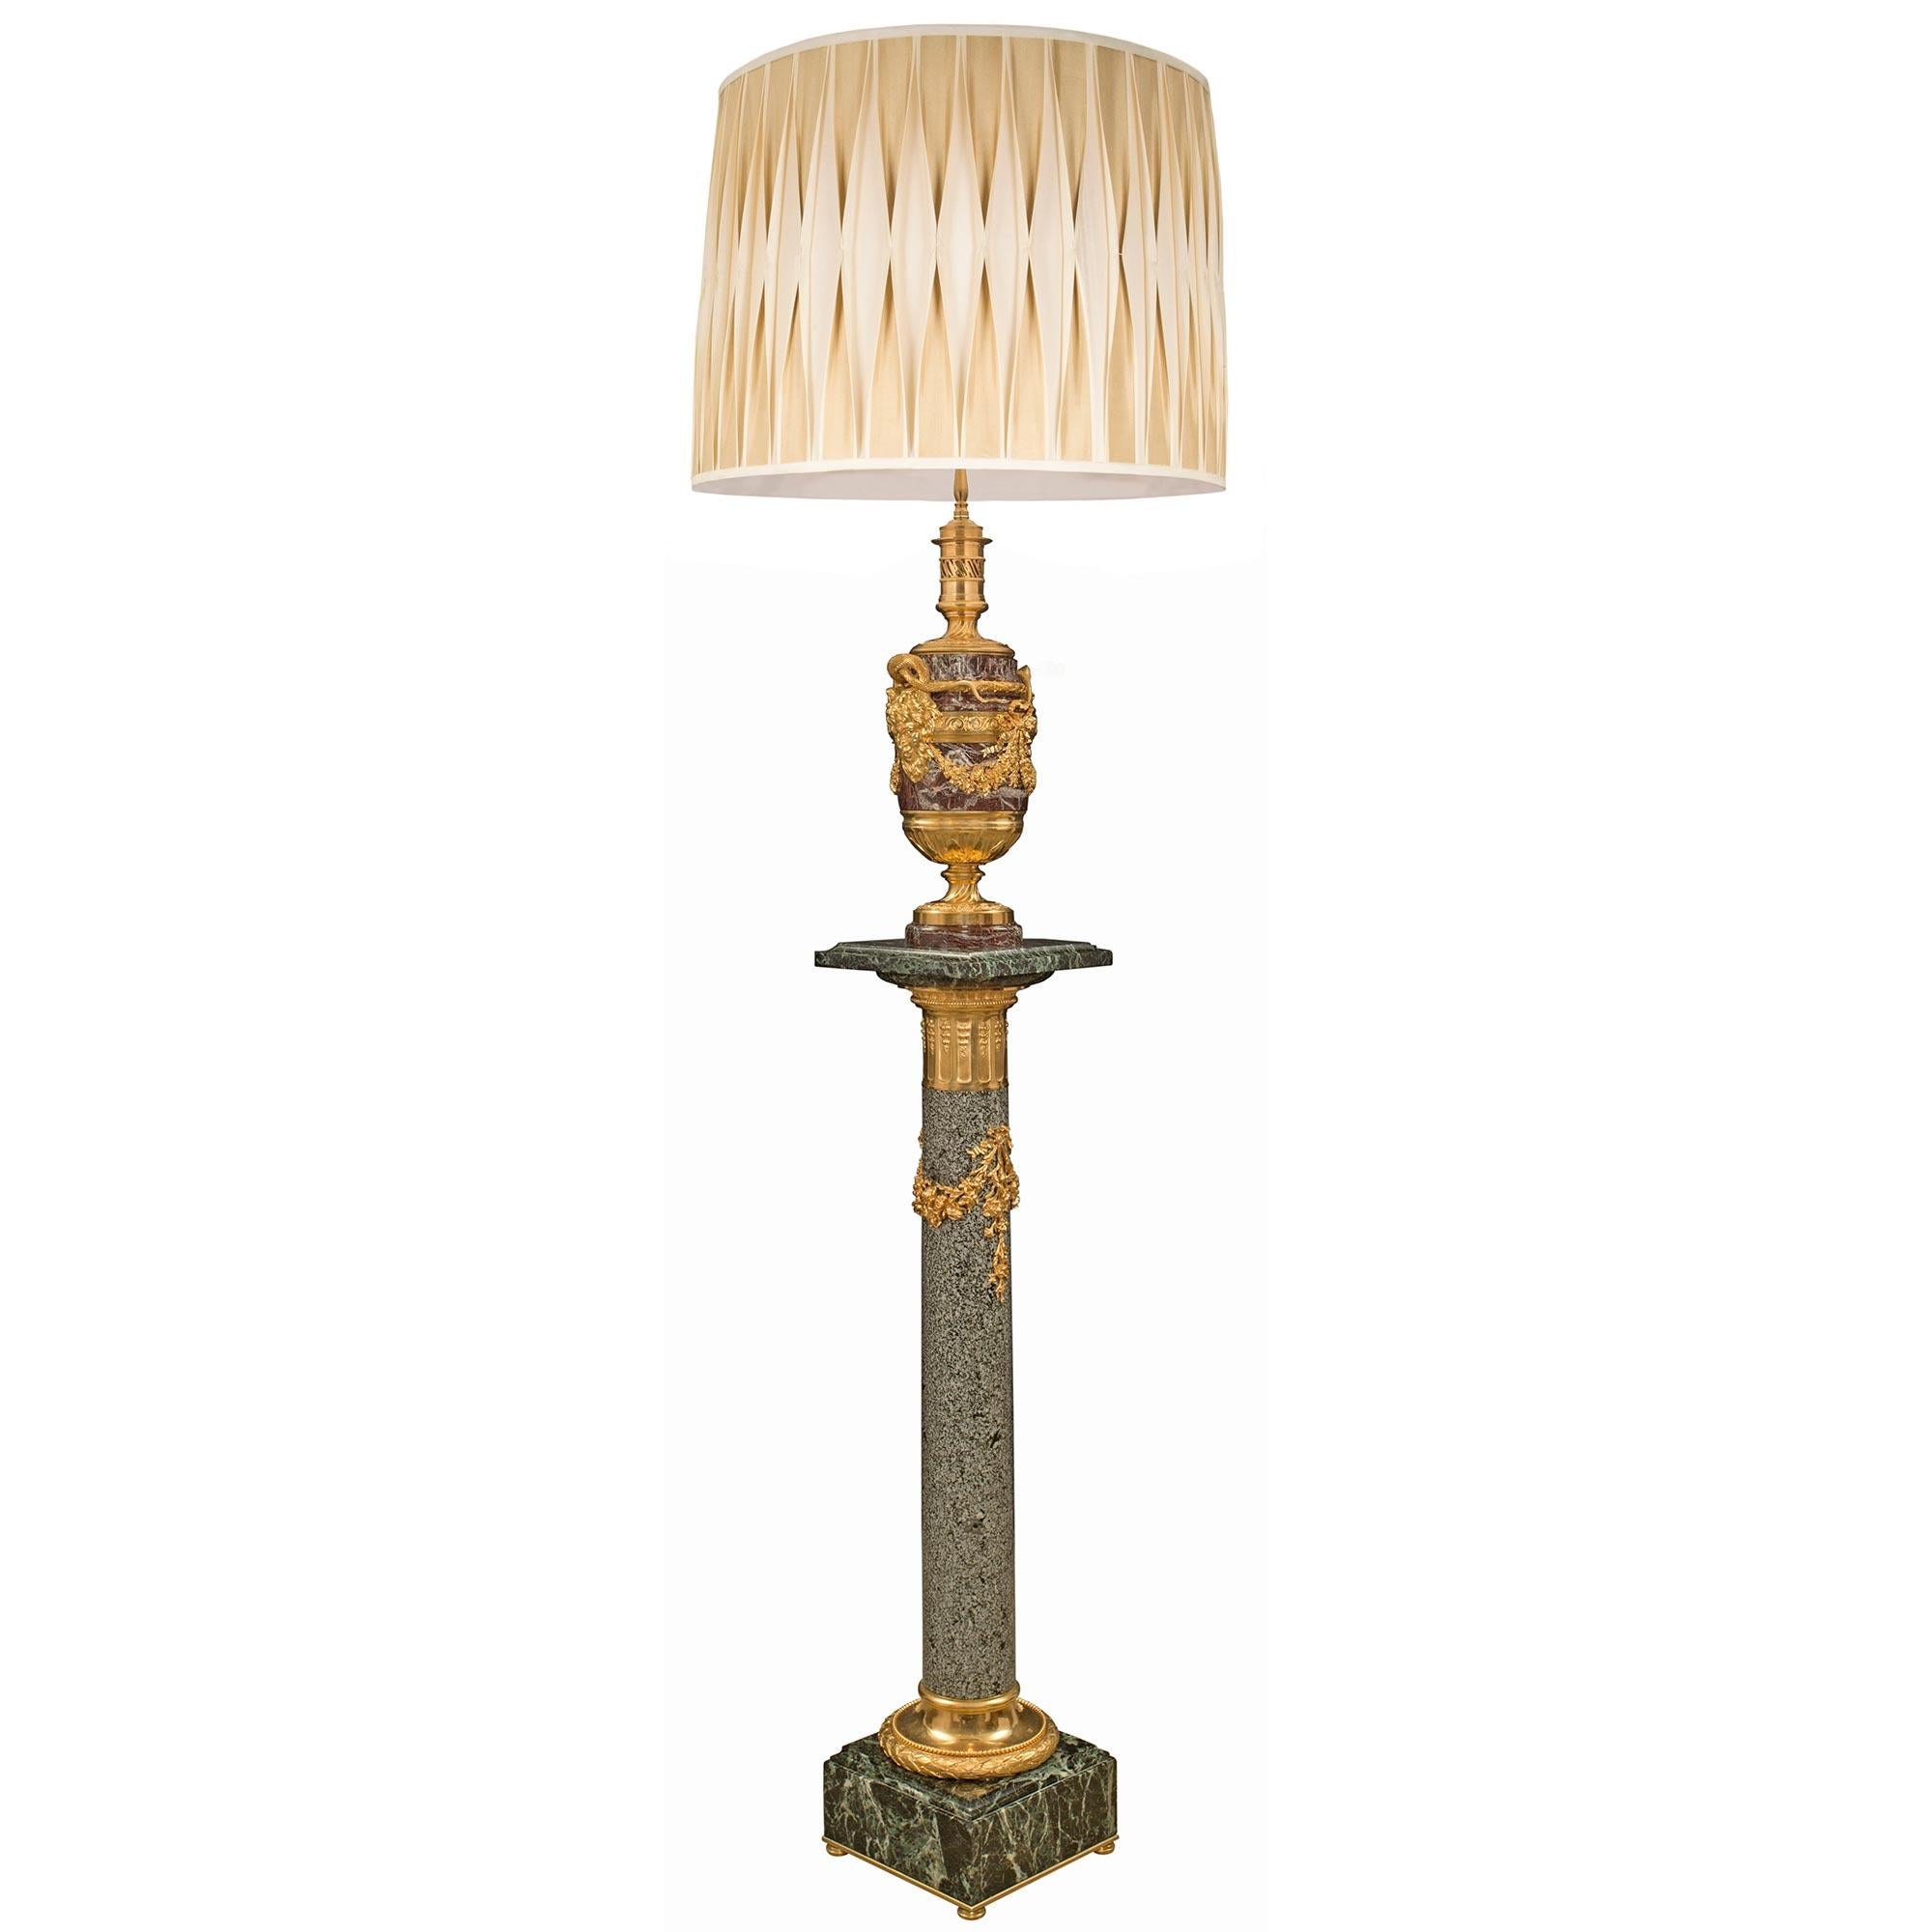 Superbe lampadaire français du XIXe siècle de style Louis XVI et de la Belle Époque en marbre Rosso Levanto et Vert de Patricia, granit et bronze doré, attribué à Henry Dasson. Le lampadaire, qui était autrefois une lampe à huile, est surélevé par